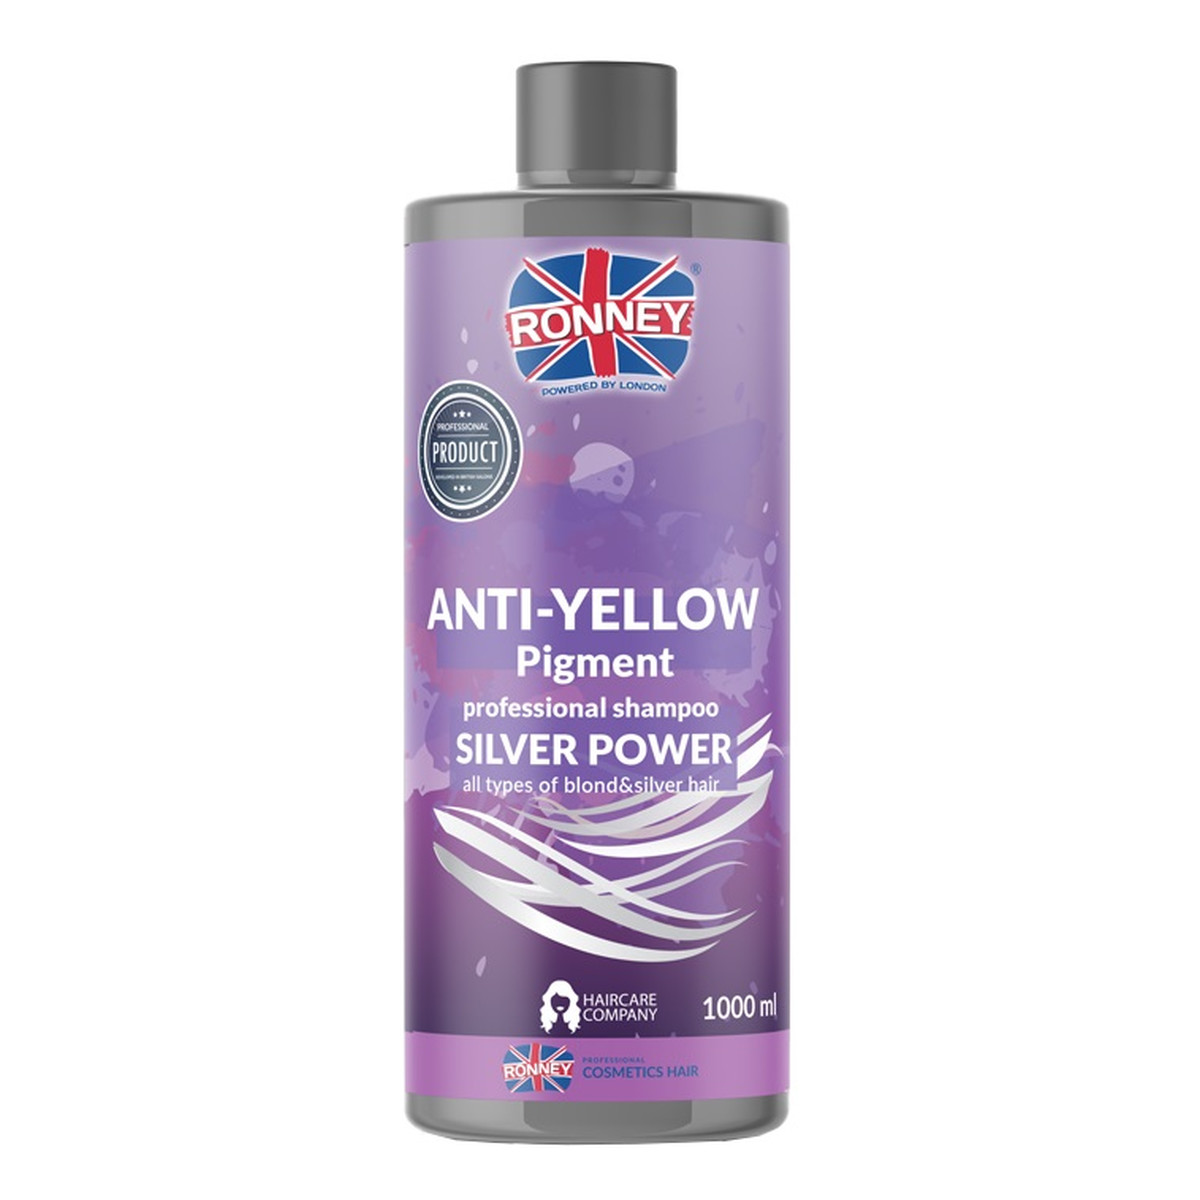 Ronney Anti-yellow silver power professional shampoo szampon do włosów blond rozjaśnianych i siwych 1000ml